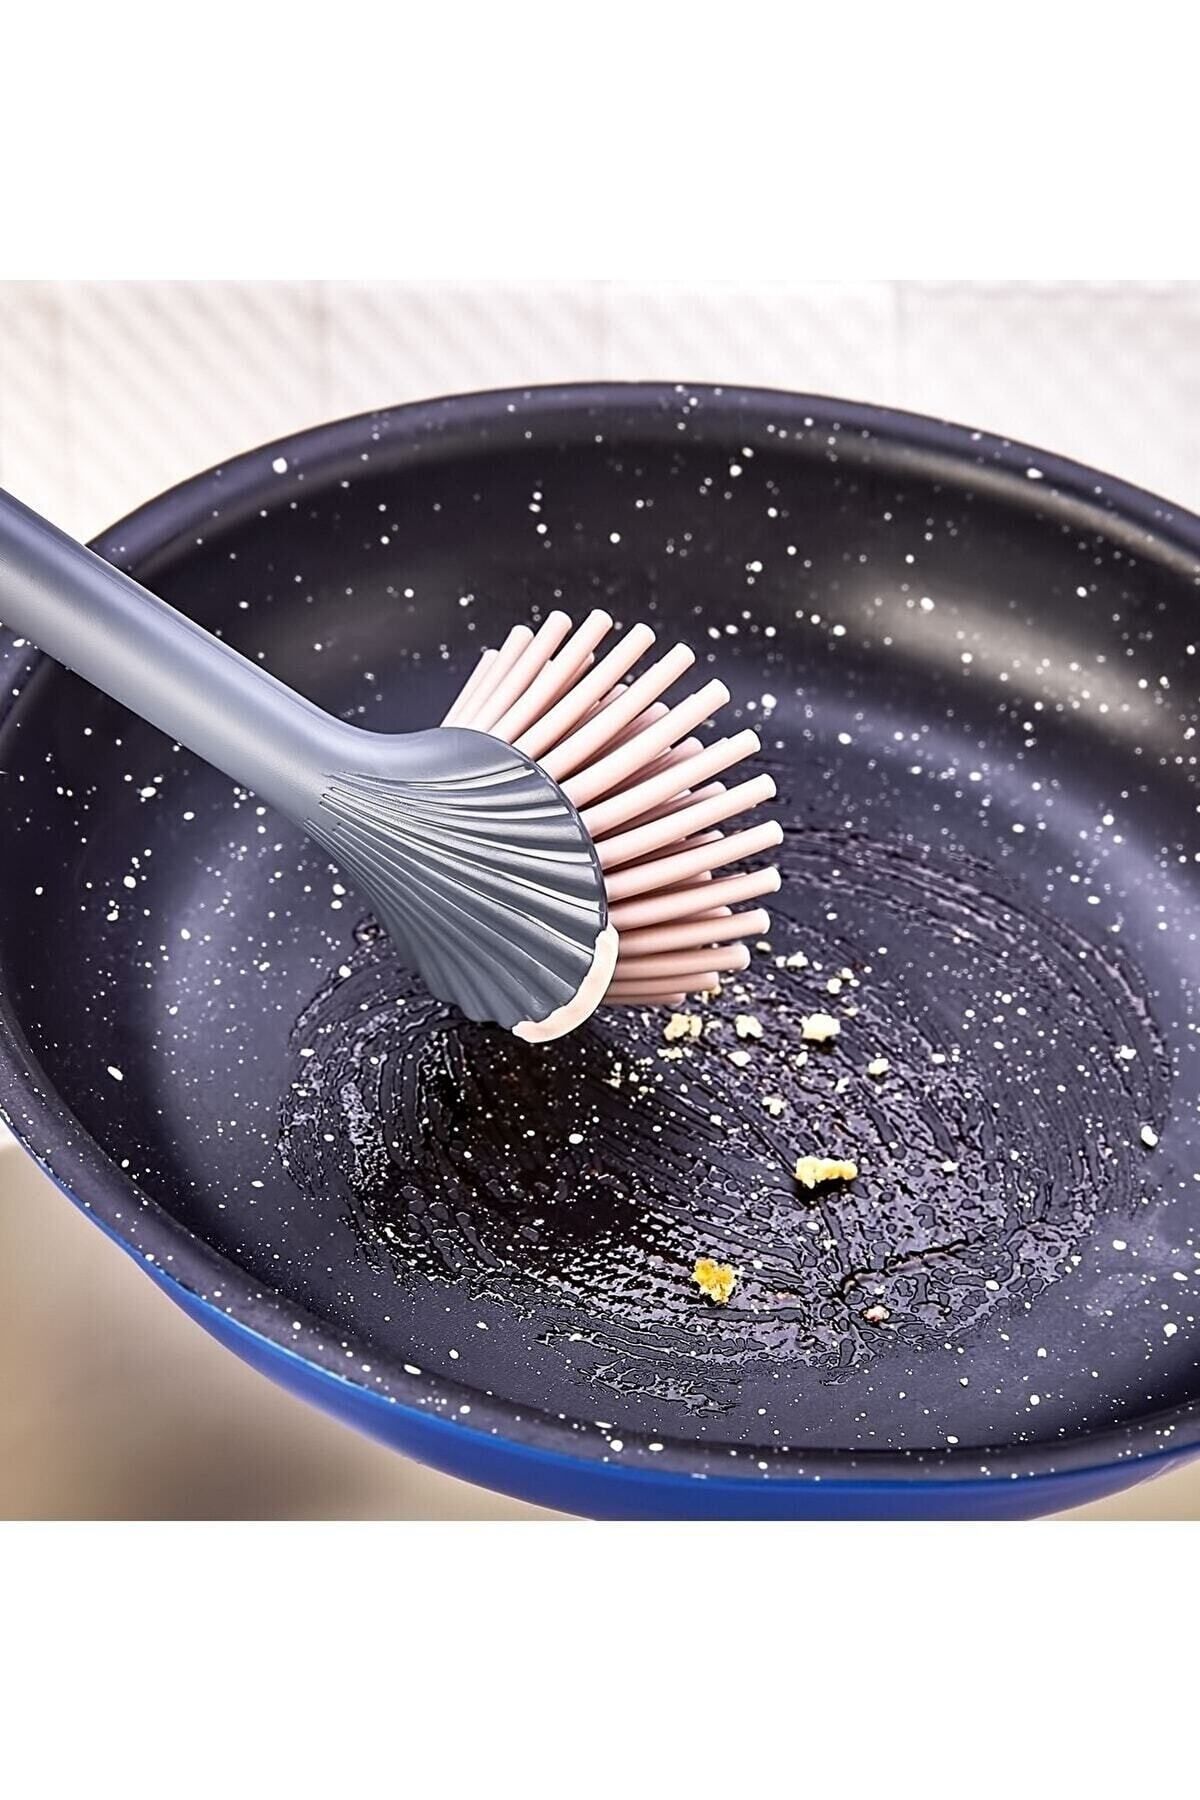 Gondol Şirin Silikon Başlıklı Bulaşık Yıkama Ve Lavabo Temizleme Mutfak Tezgah Fırçası